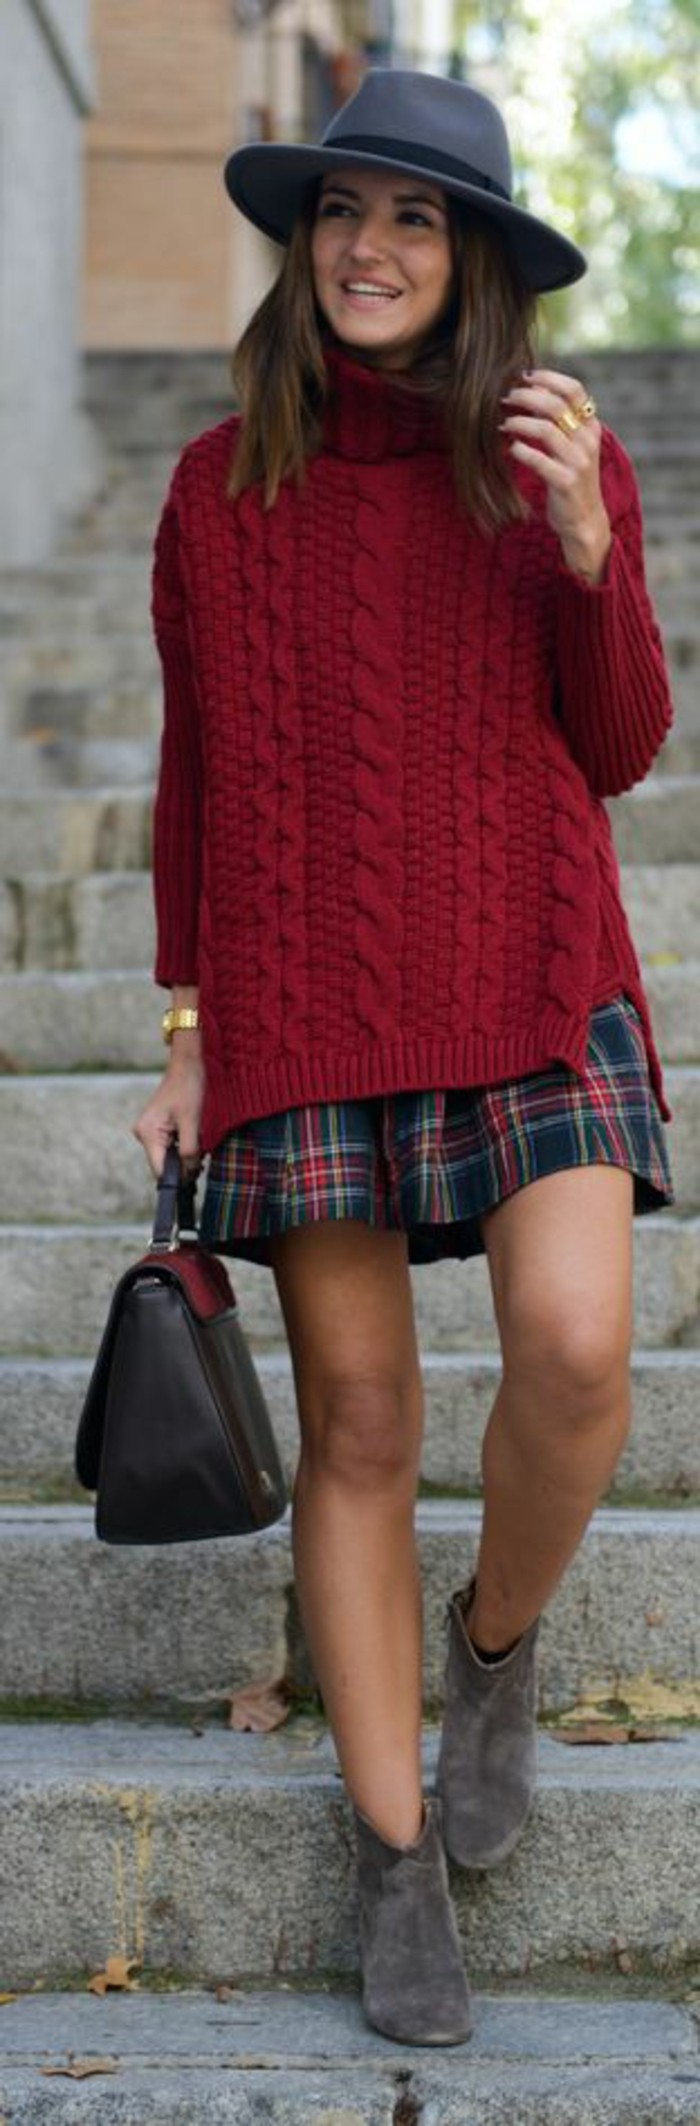 jolie-combinaison-pull-en-laine-rouge-jupe-ecossaise